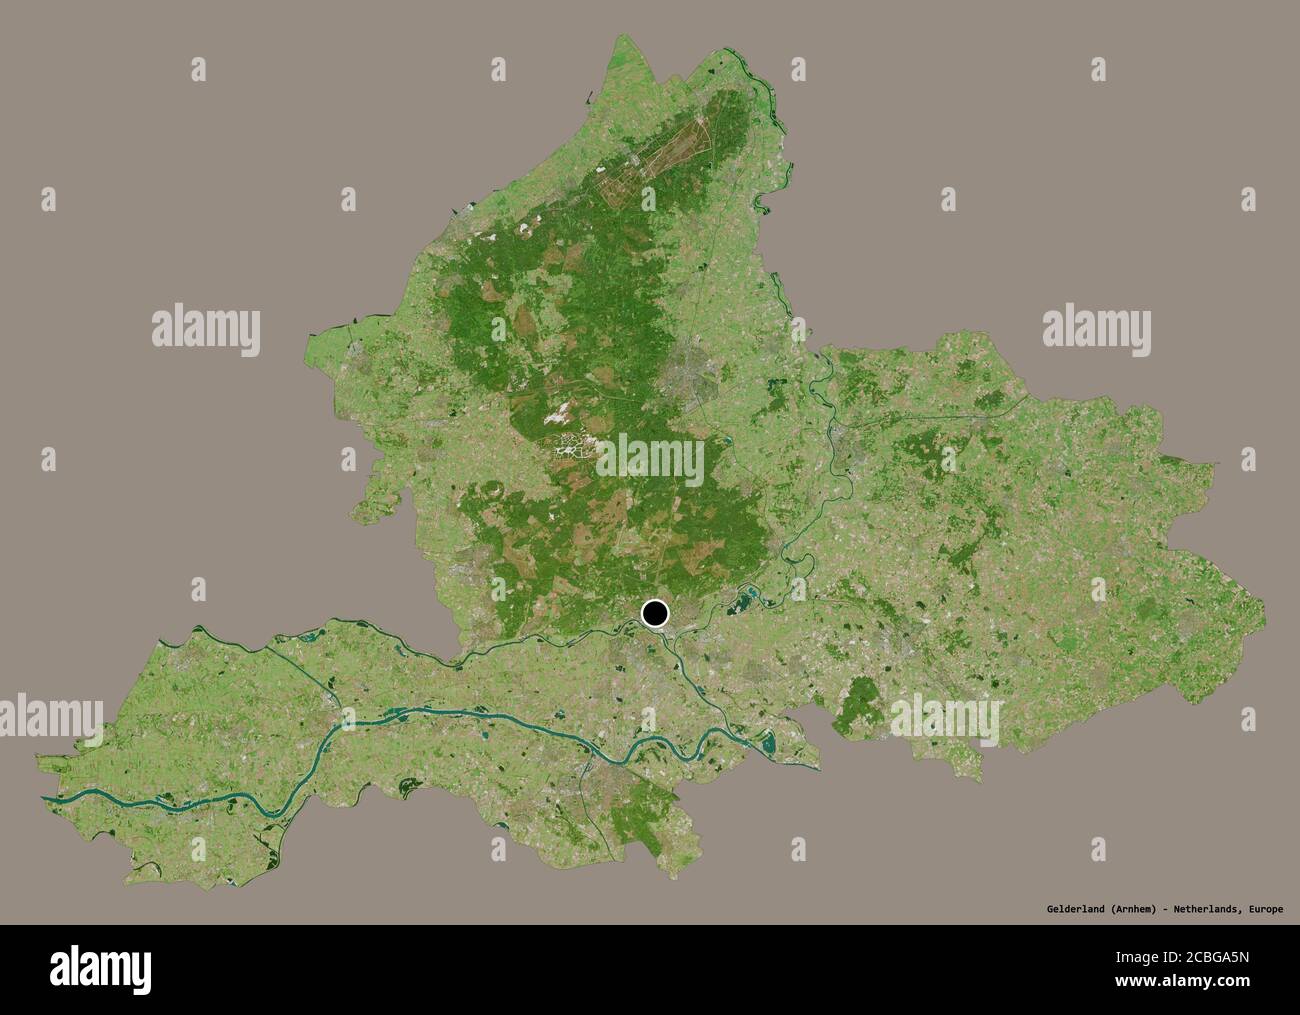 Forme de la Gelderland, province des pays-Bas, avec sa capitale isolée sur un fond de couleur unie. Imagerie satellite. Rendu 3D Banque D'Images